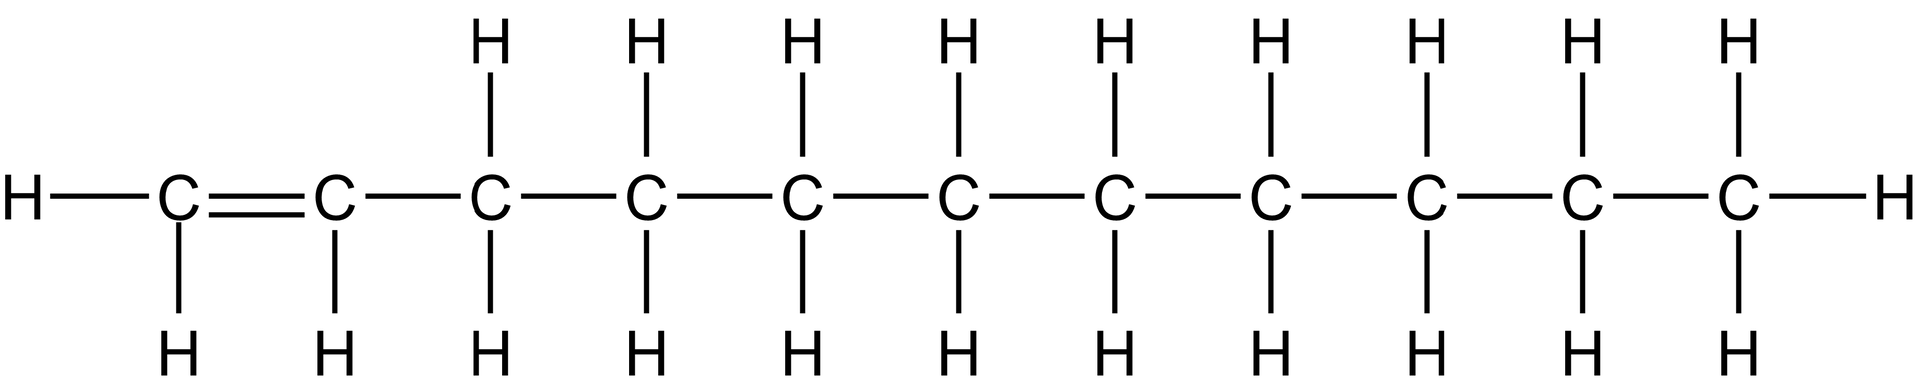 Wzór strukturalny przedstawia długi łańcuch zbudowany z 11 atomów węgla. Dwa pierwsze atomy węgla, od lewej strony, są połączone wiązaniem podwójnym. Pozostałe pojedynczym. Pierwszy atom węgla od lewej strony łączy się z dwoma atomami wodoru, drugi z jednym na dole, pozostałe - oprócz ostatniego - z dwoma atomami wodoru. Ostatni atom węgla łączy się z trzema atomami wodoru.     